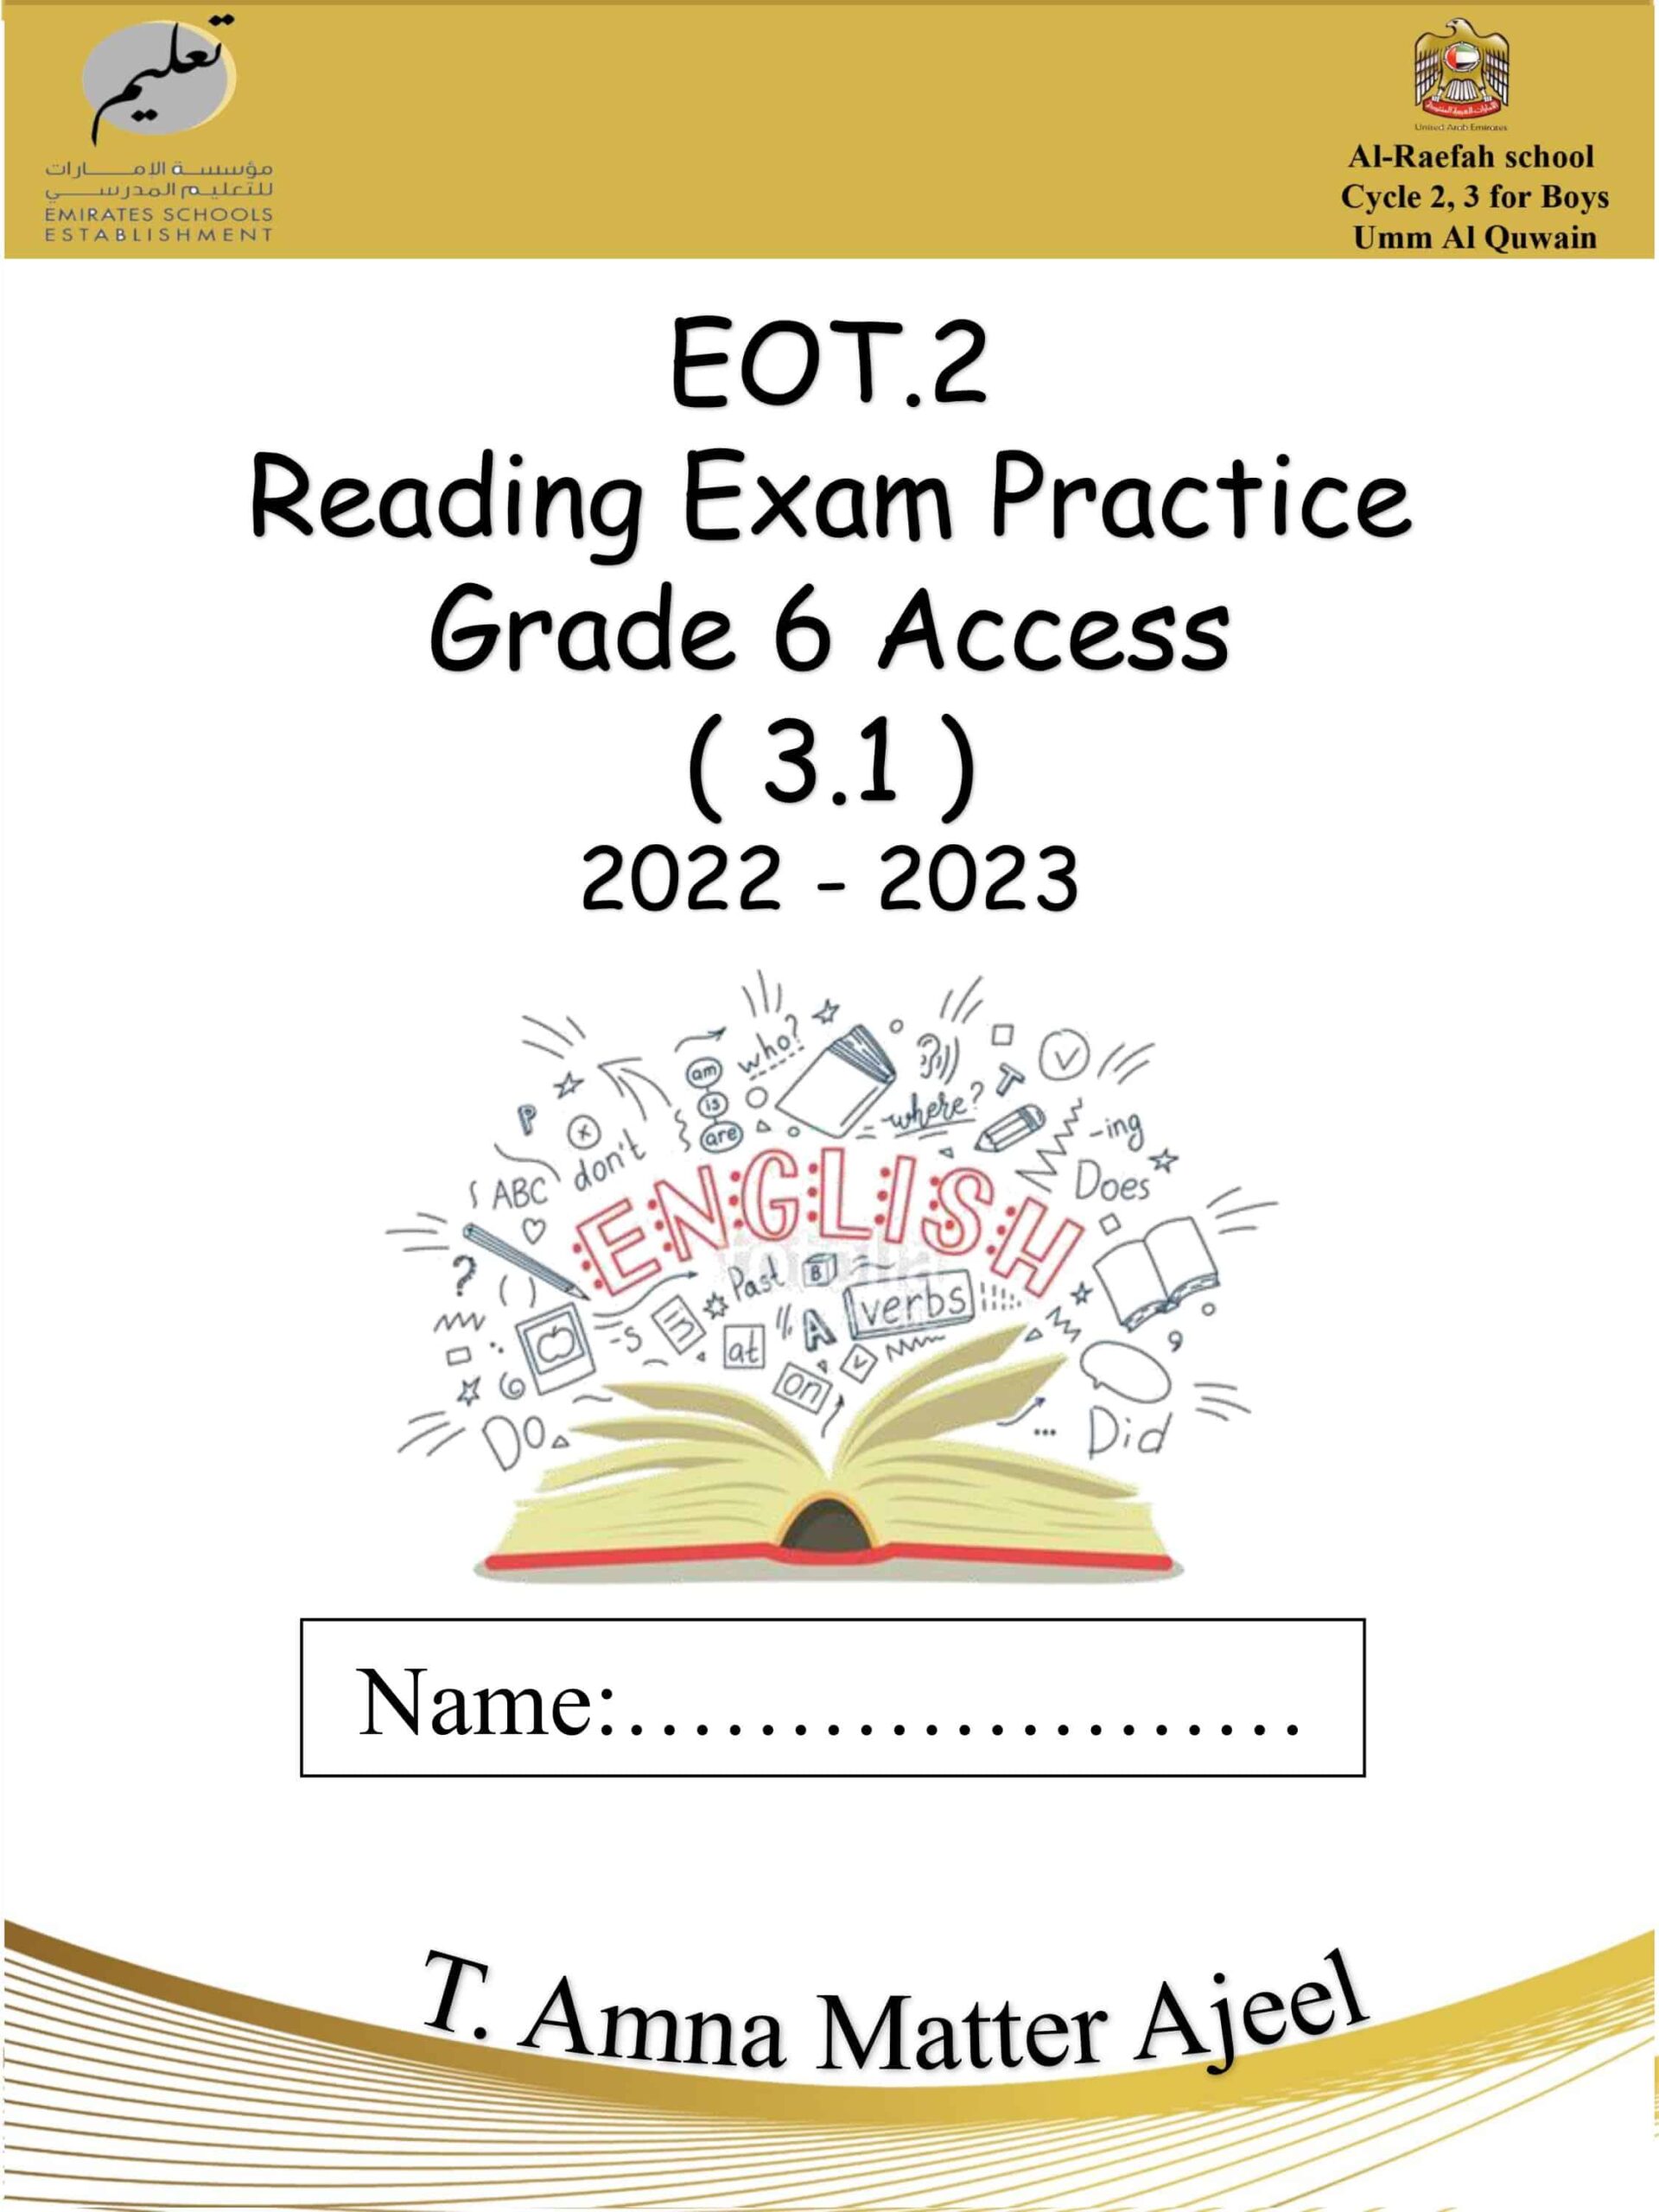 أوراق عمل Reading Exam Practice اللغة الإنجليزية الصف السادس Access